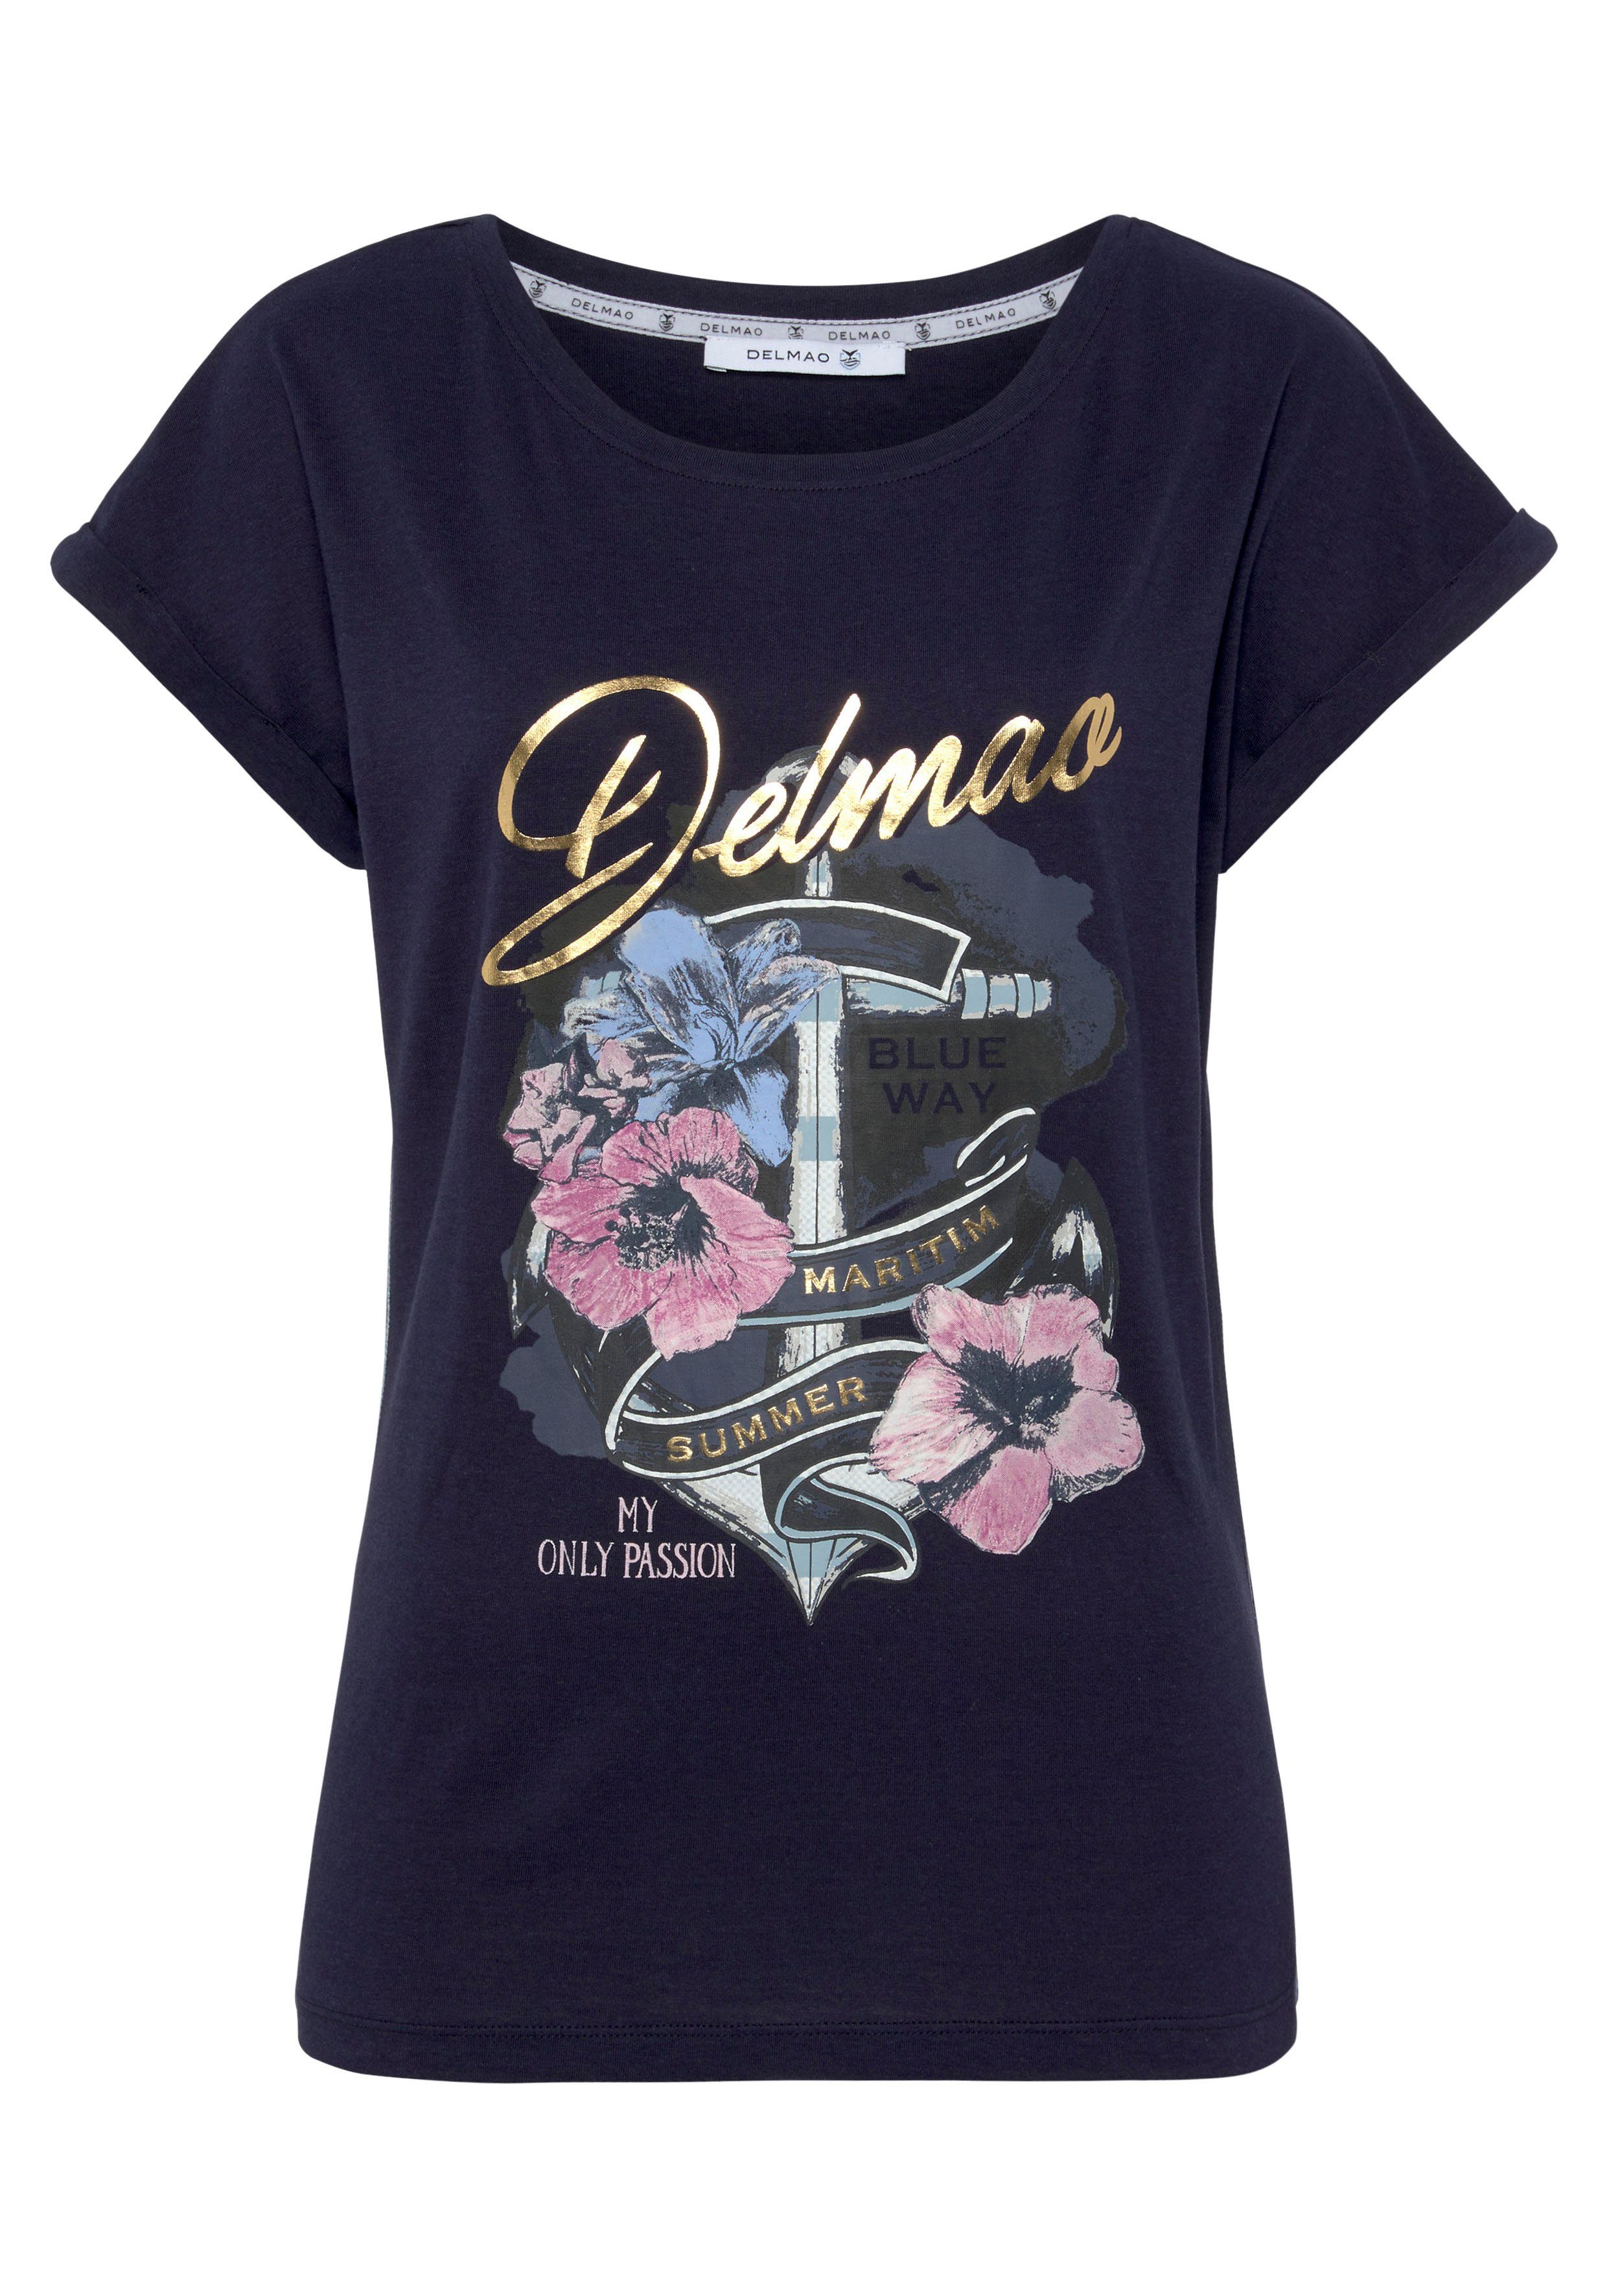 DELMAO Print-Shirt mit NEUE Anker-Logodruck - geblümten MARKE